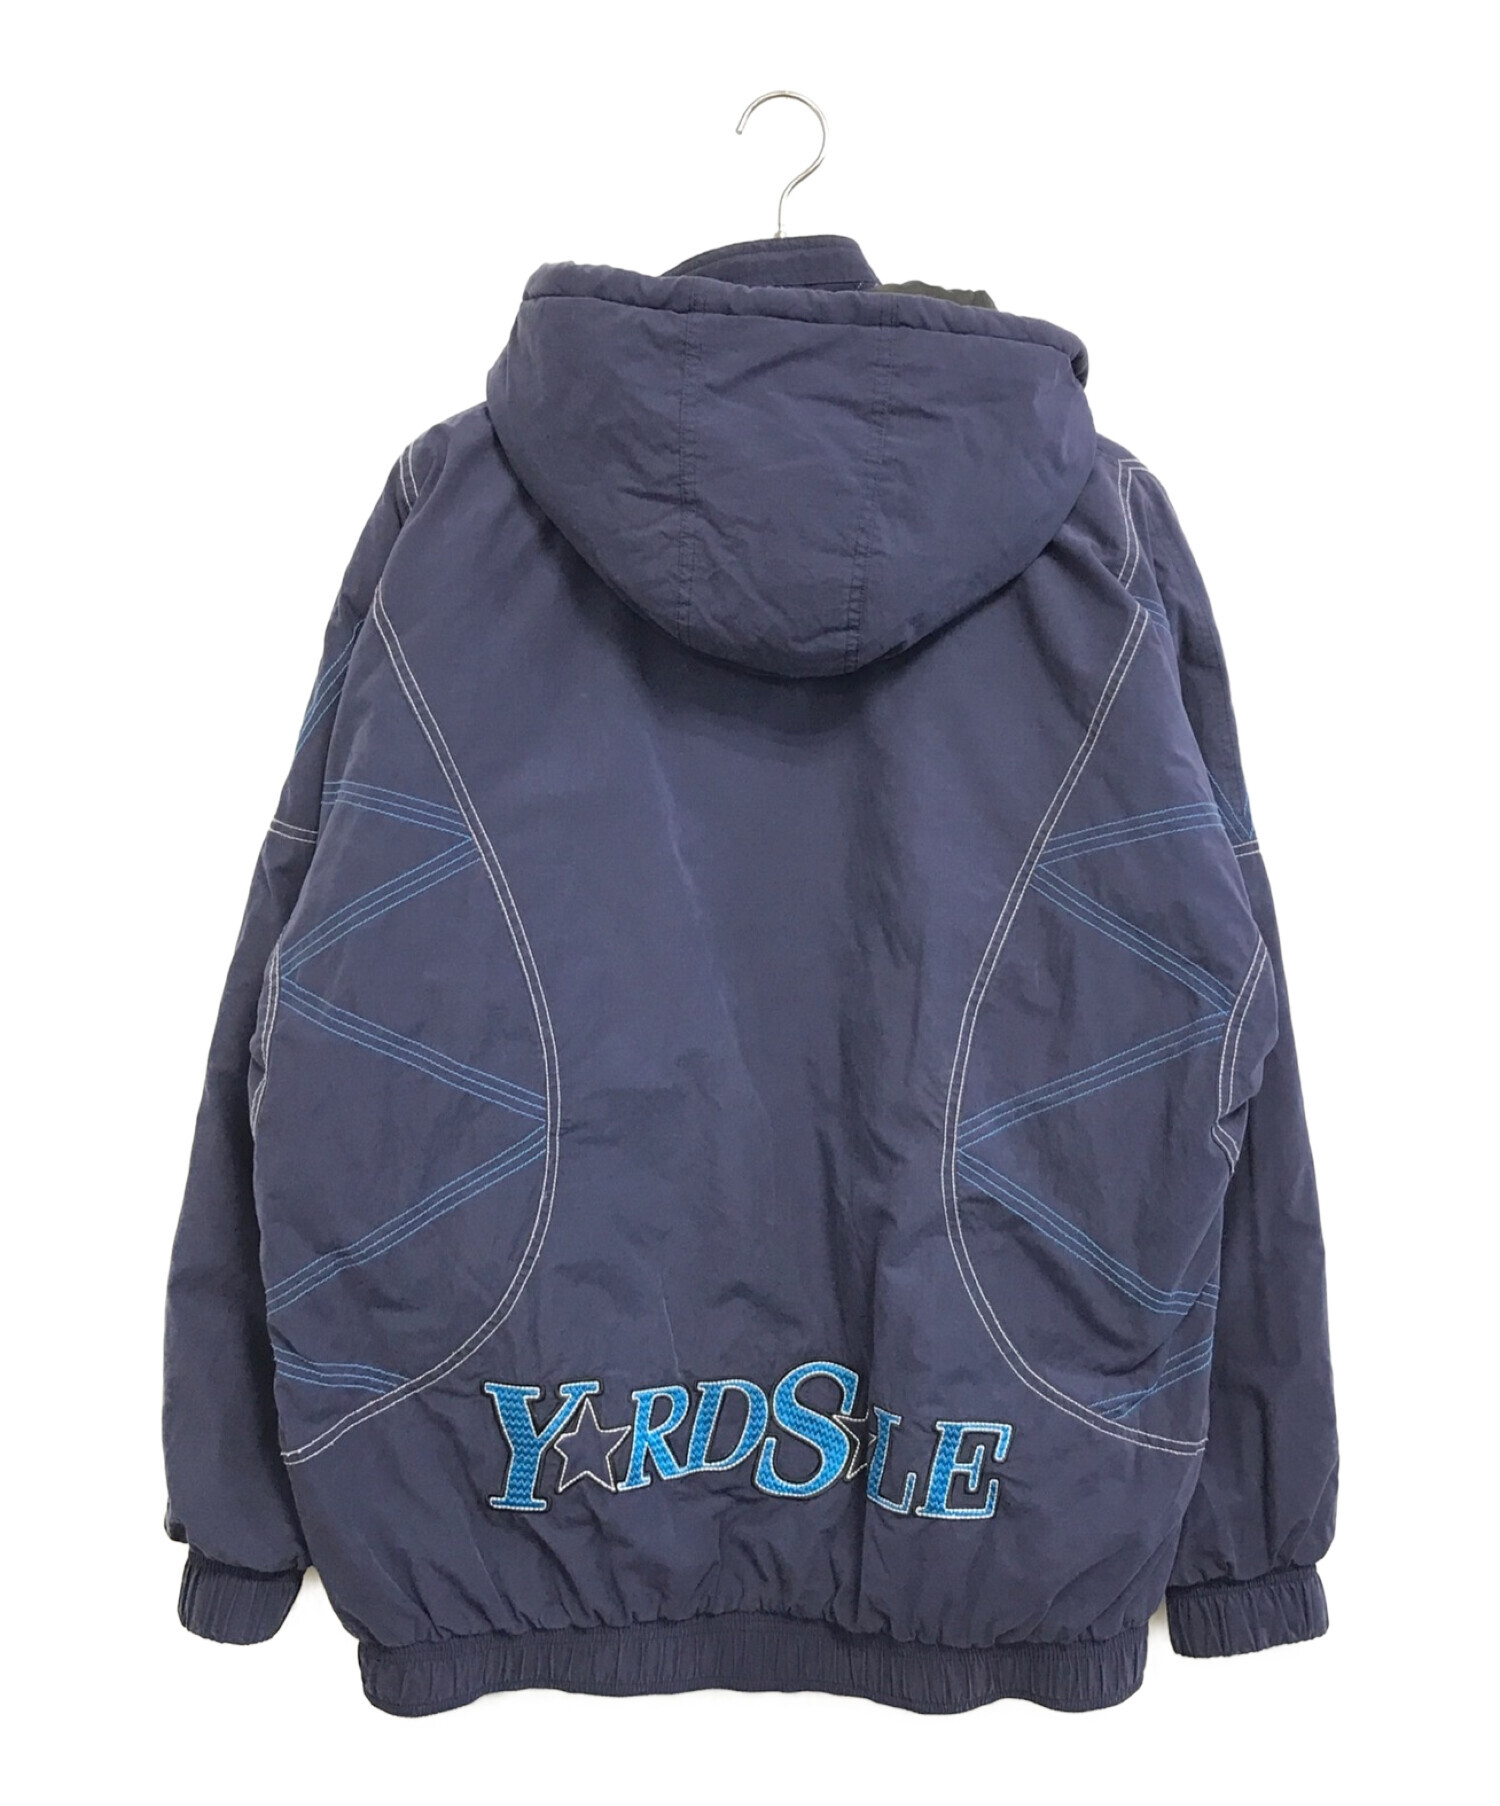 yardsale magic jacket